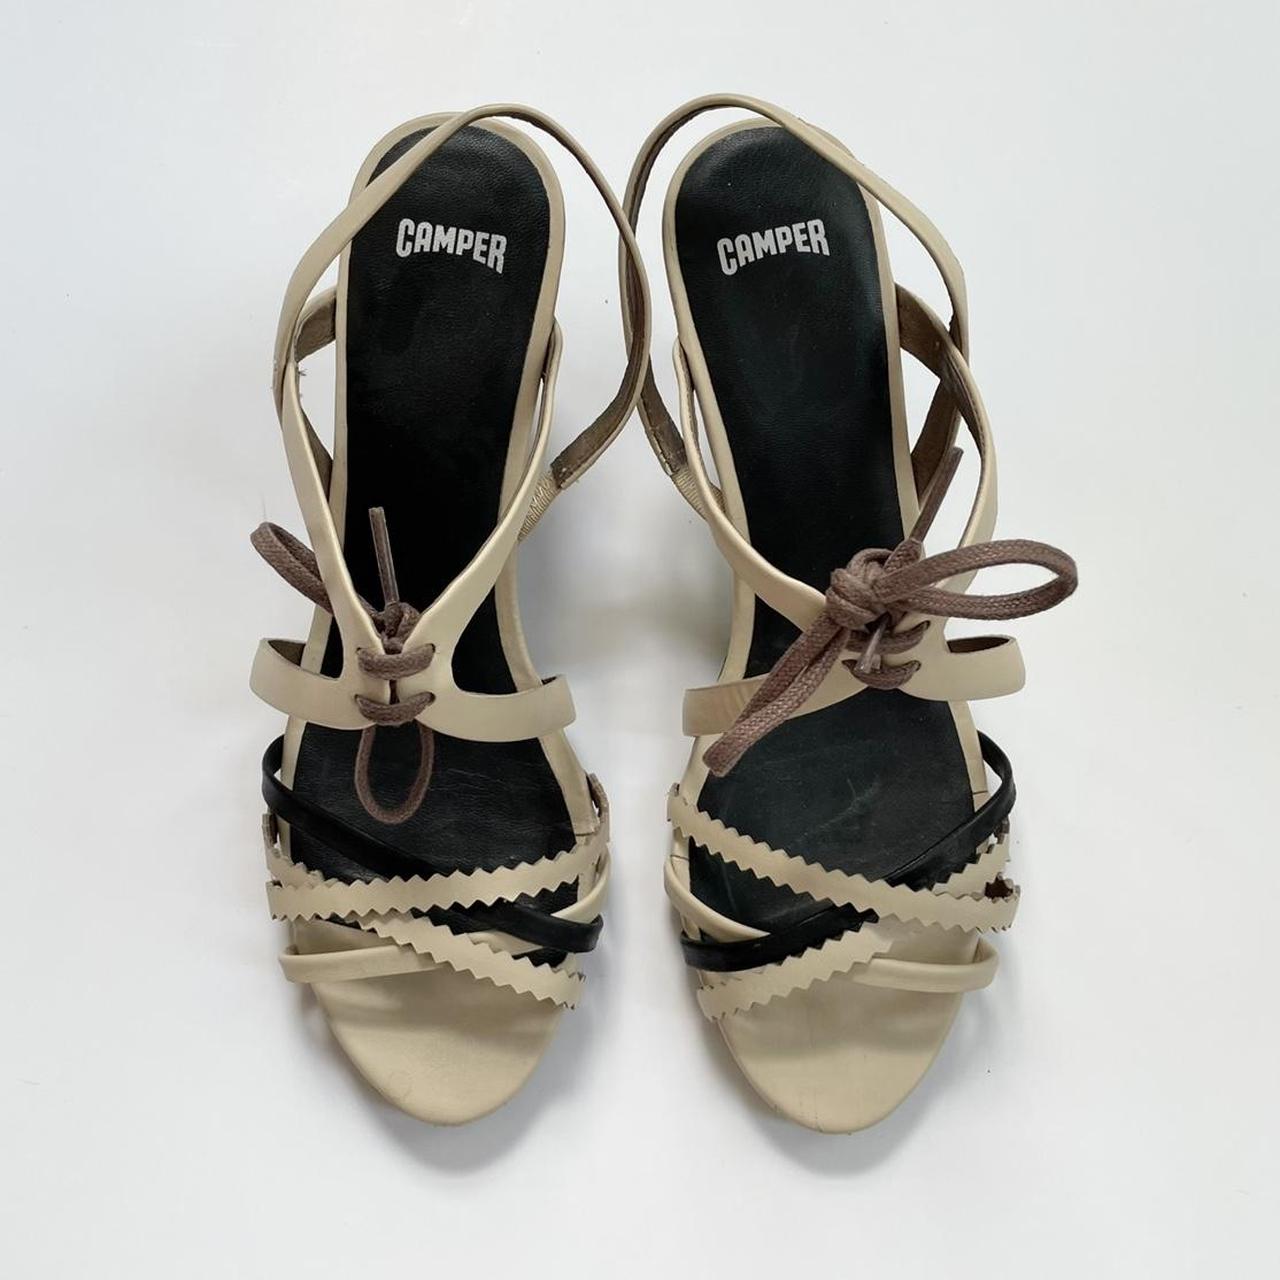 Product Image 2 - Camper Sandals. EU 38

Camper heeled